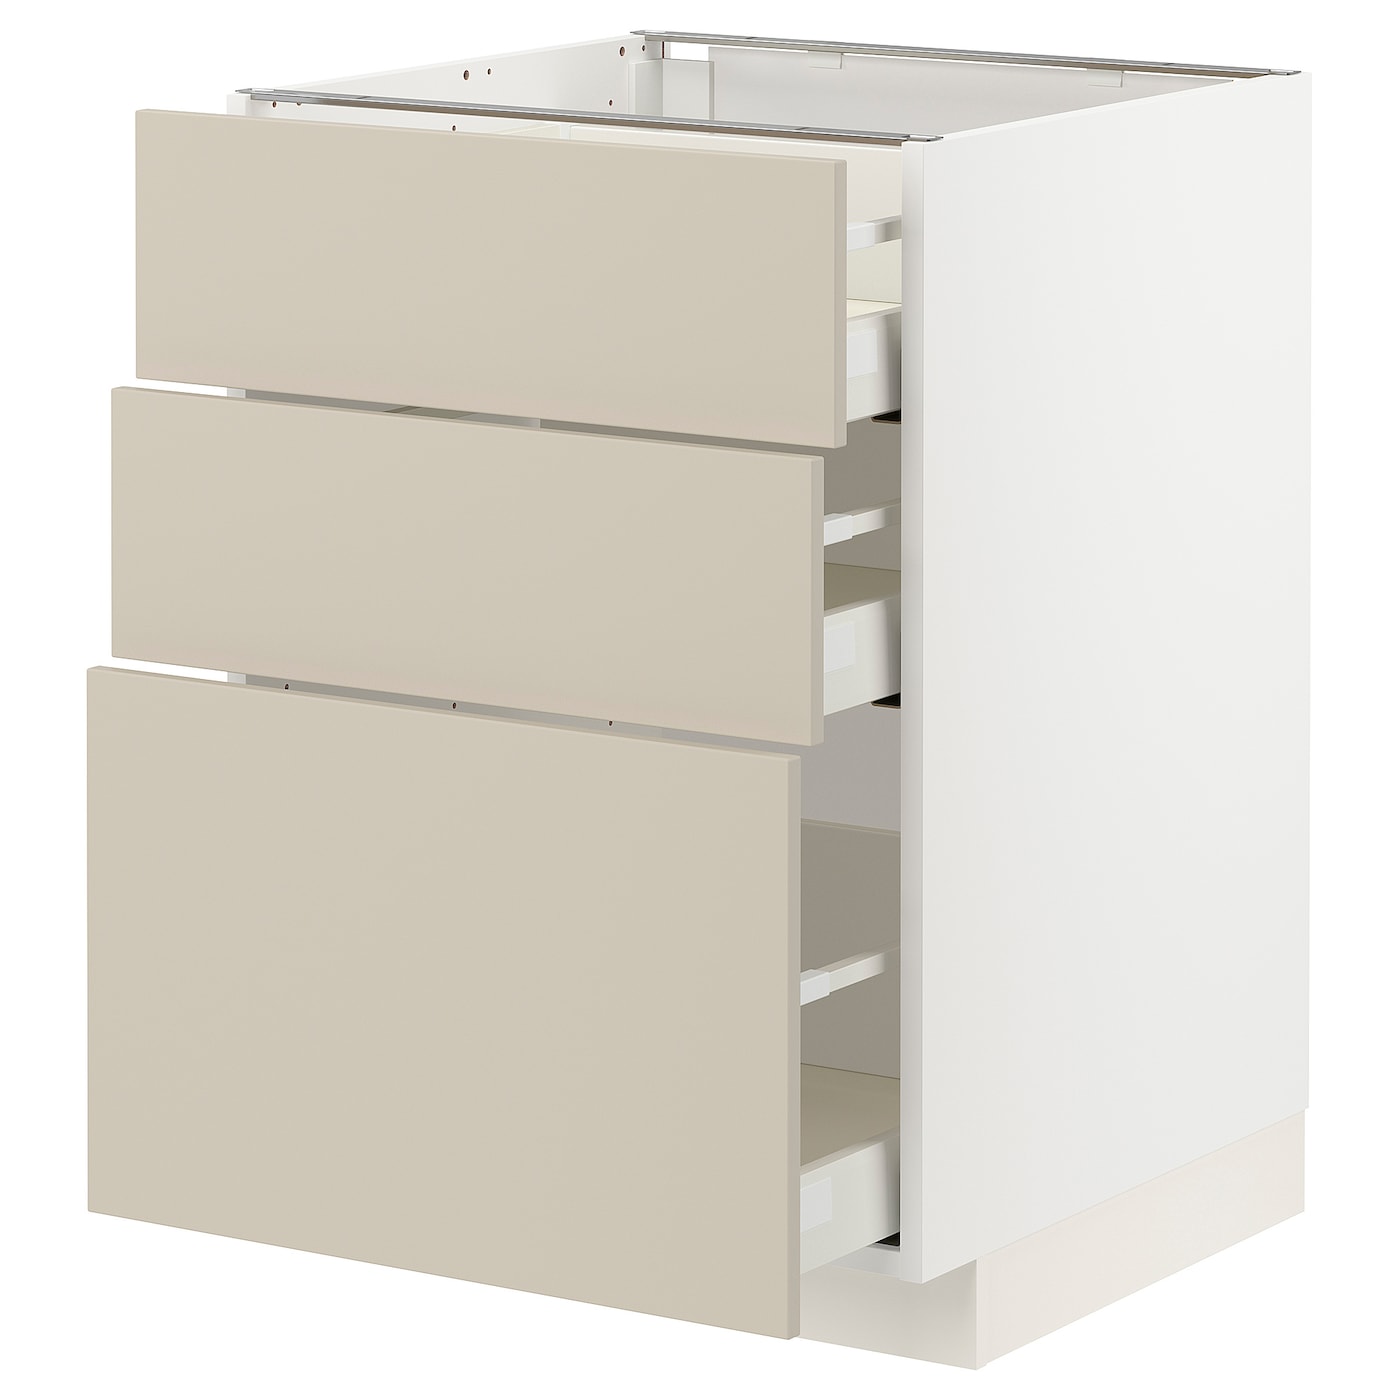 Напольный шкаф - IKEA METOD MAXIMERA, 88x62x60см, белый/бежевый, МЕТОД МАКСИМЕРА ИКЕА